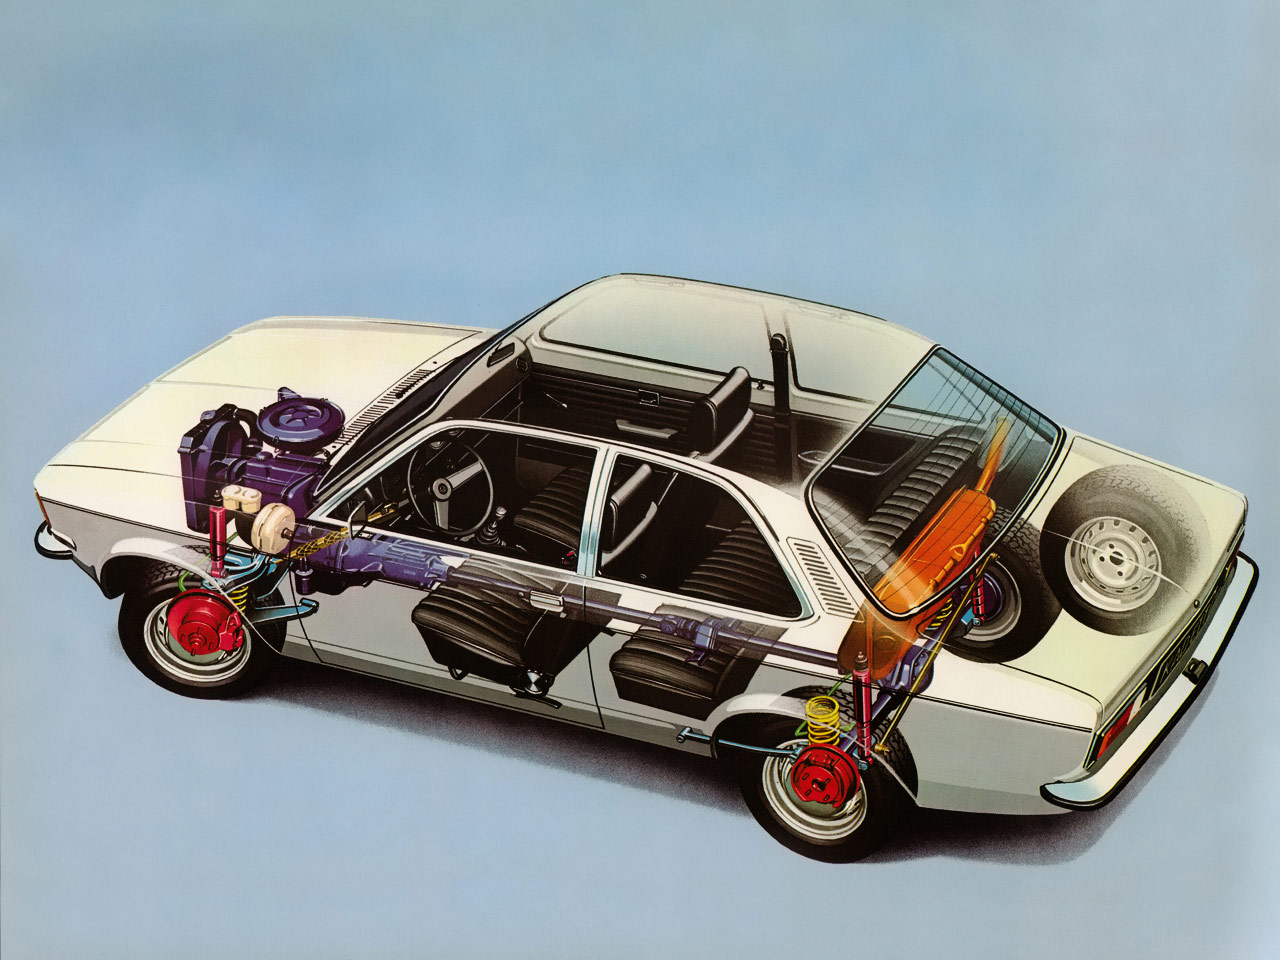 Opel Kadett sedan 1977 cutaway drawing